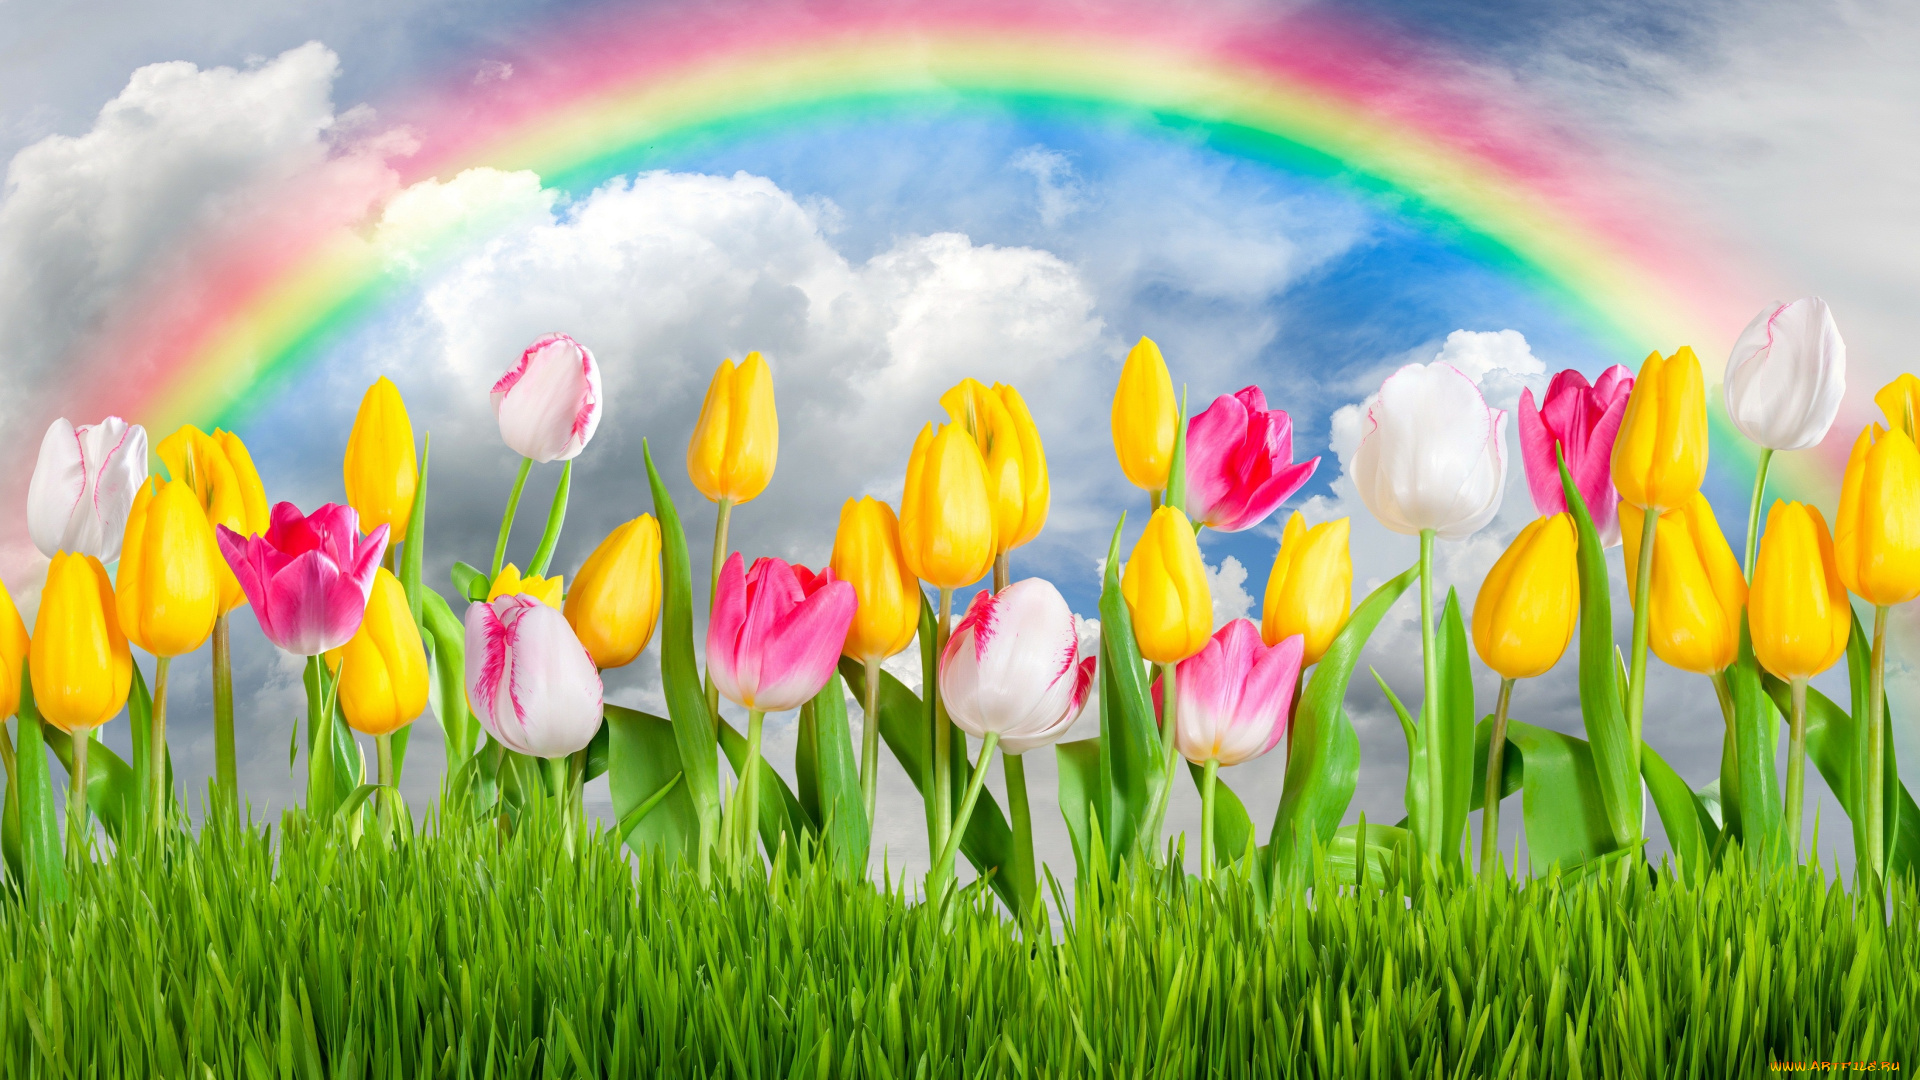 разное, компьютерный, дизайн, colorful, rainbow, sunshine, sky, tulips, flowers, цветы, grass, spring, тюльпаны, весна, meadow